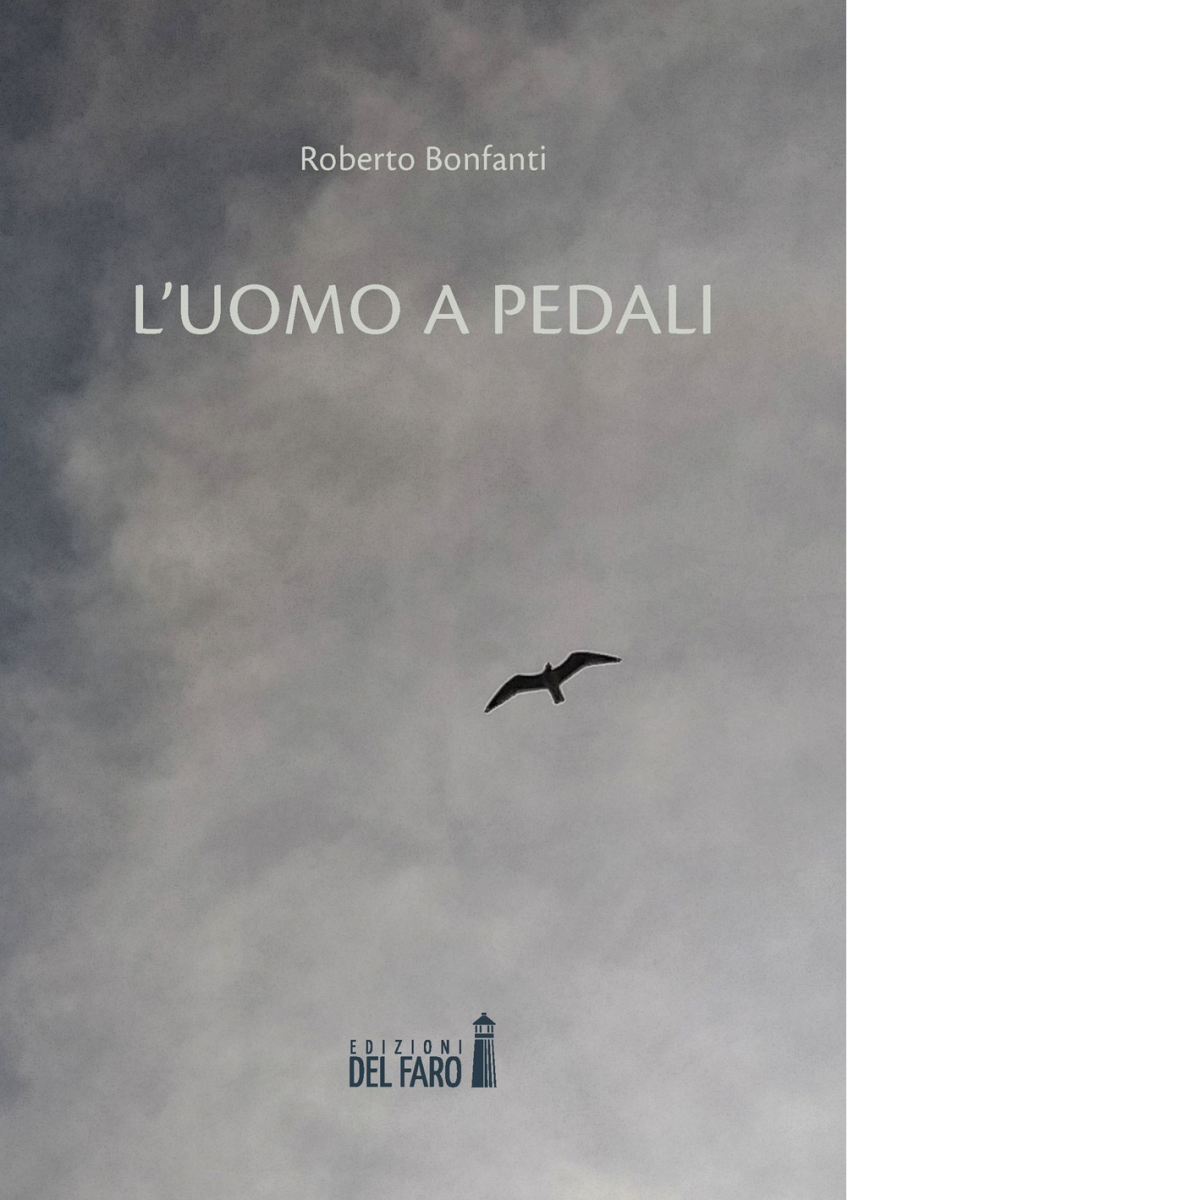 L' uomo a pedali di Roberto Bonfanti - Edizioni Del faro, 2021